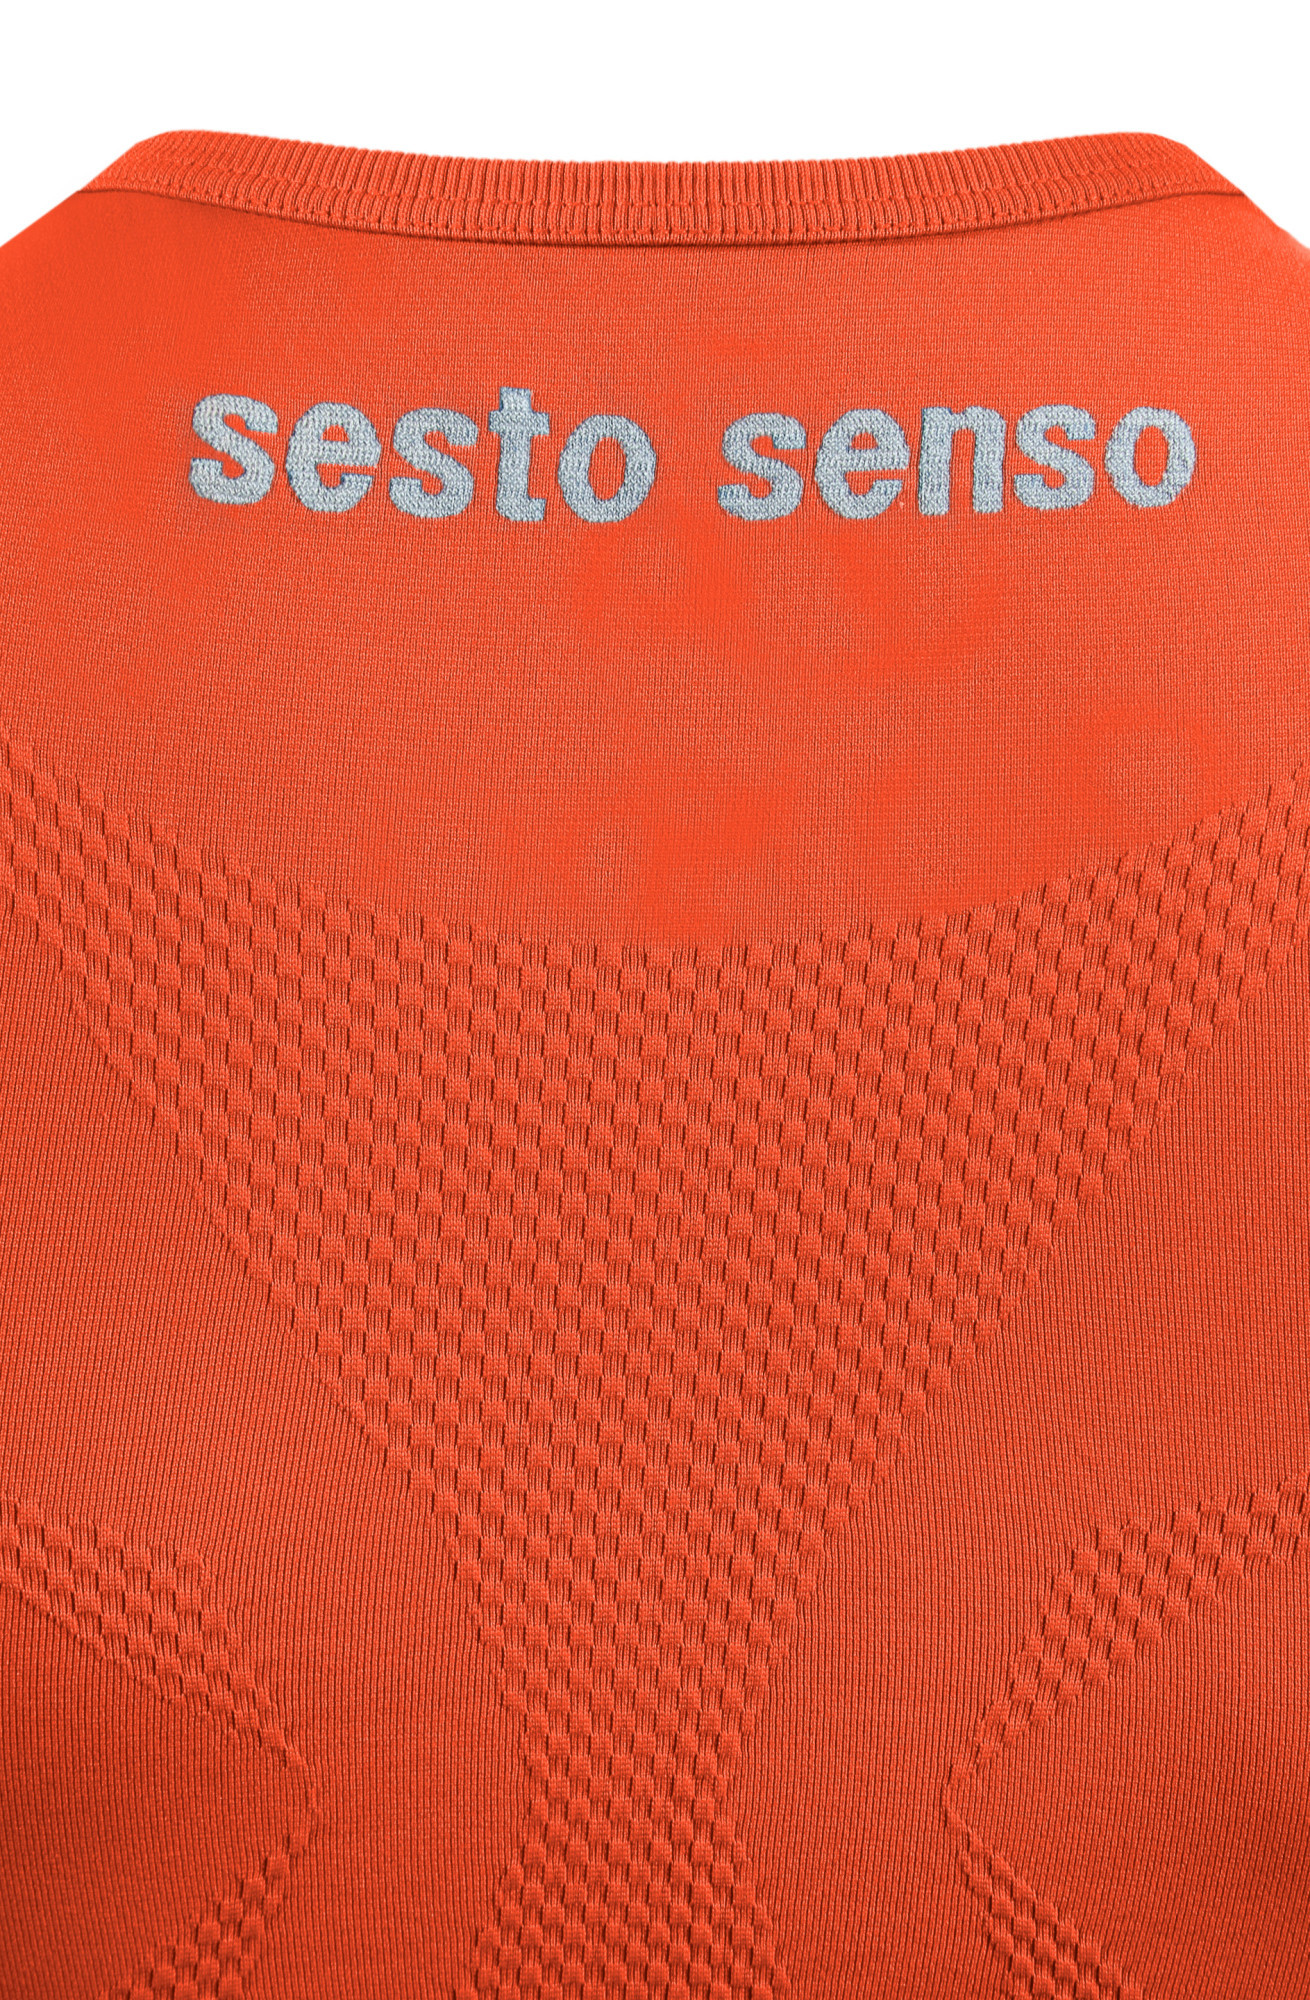 Sesto Senso Thermo Tílko CL38 Orange XXL/XXXL